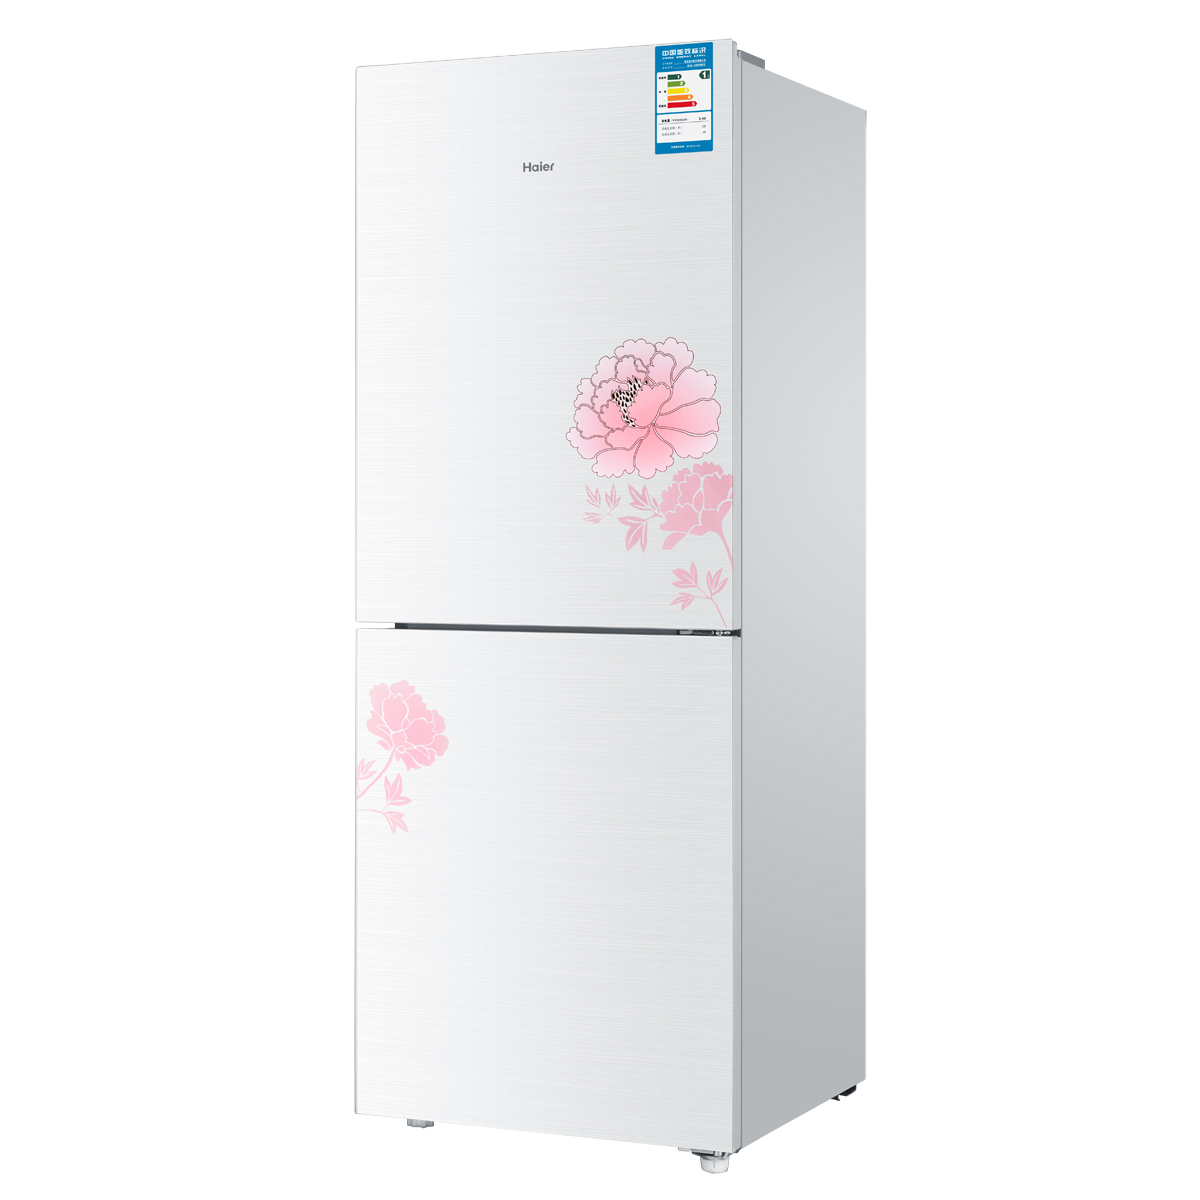 海尔冰箱BCD-165E\/G如何调冰箱内温度?